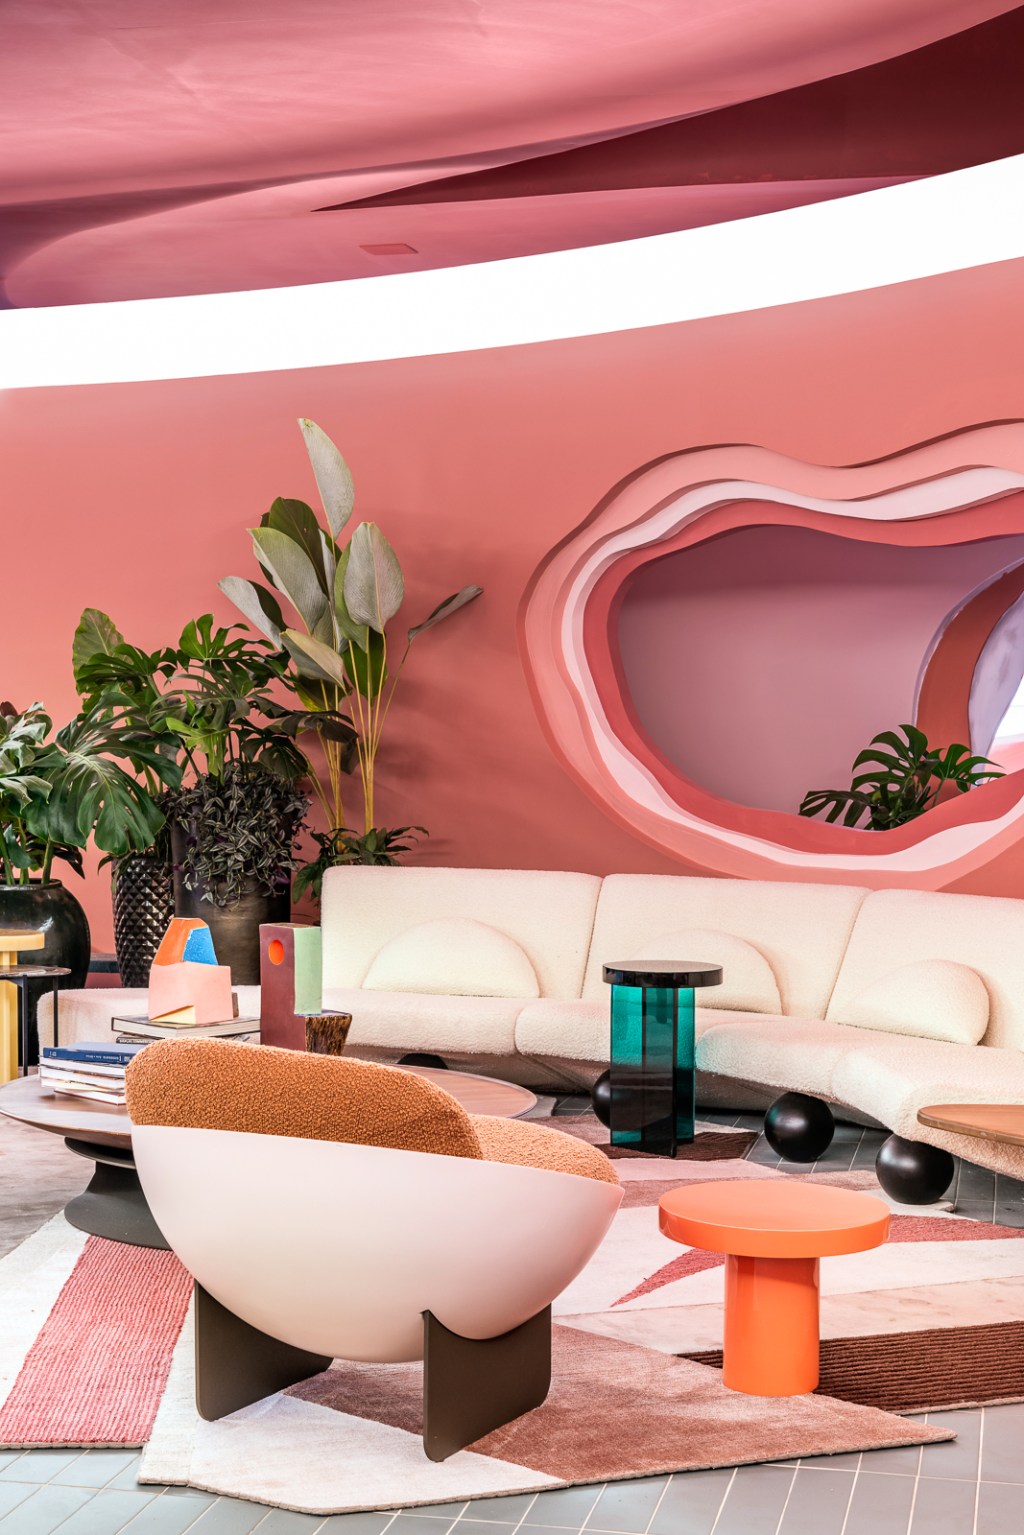 Ricardo Abreu - Casa Coral. Projeto da CASACOR São Paulo 2023. Sala com paredes rosas, sofá curvo, plantas e tapete.